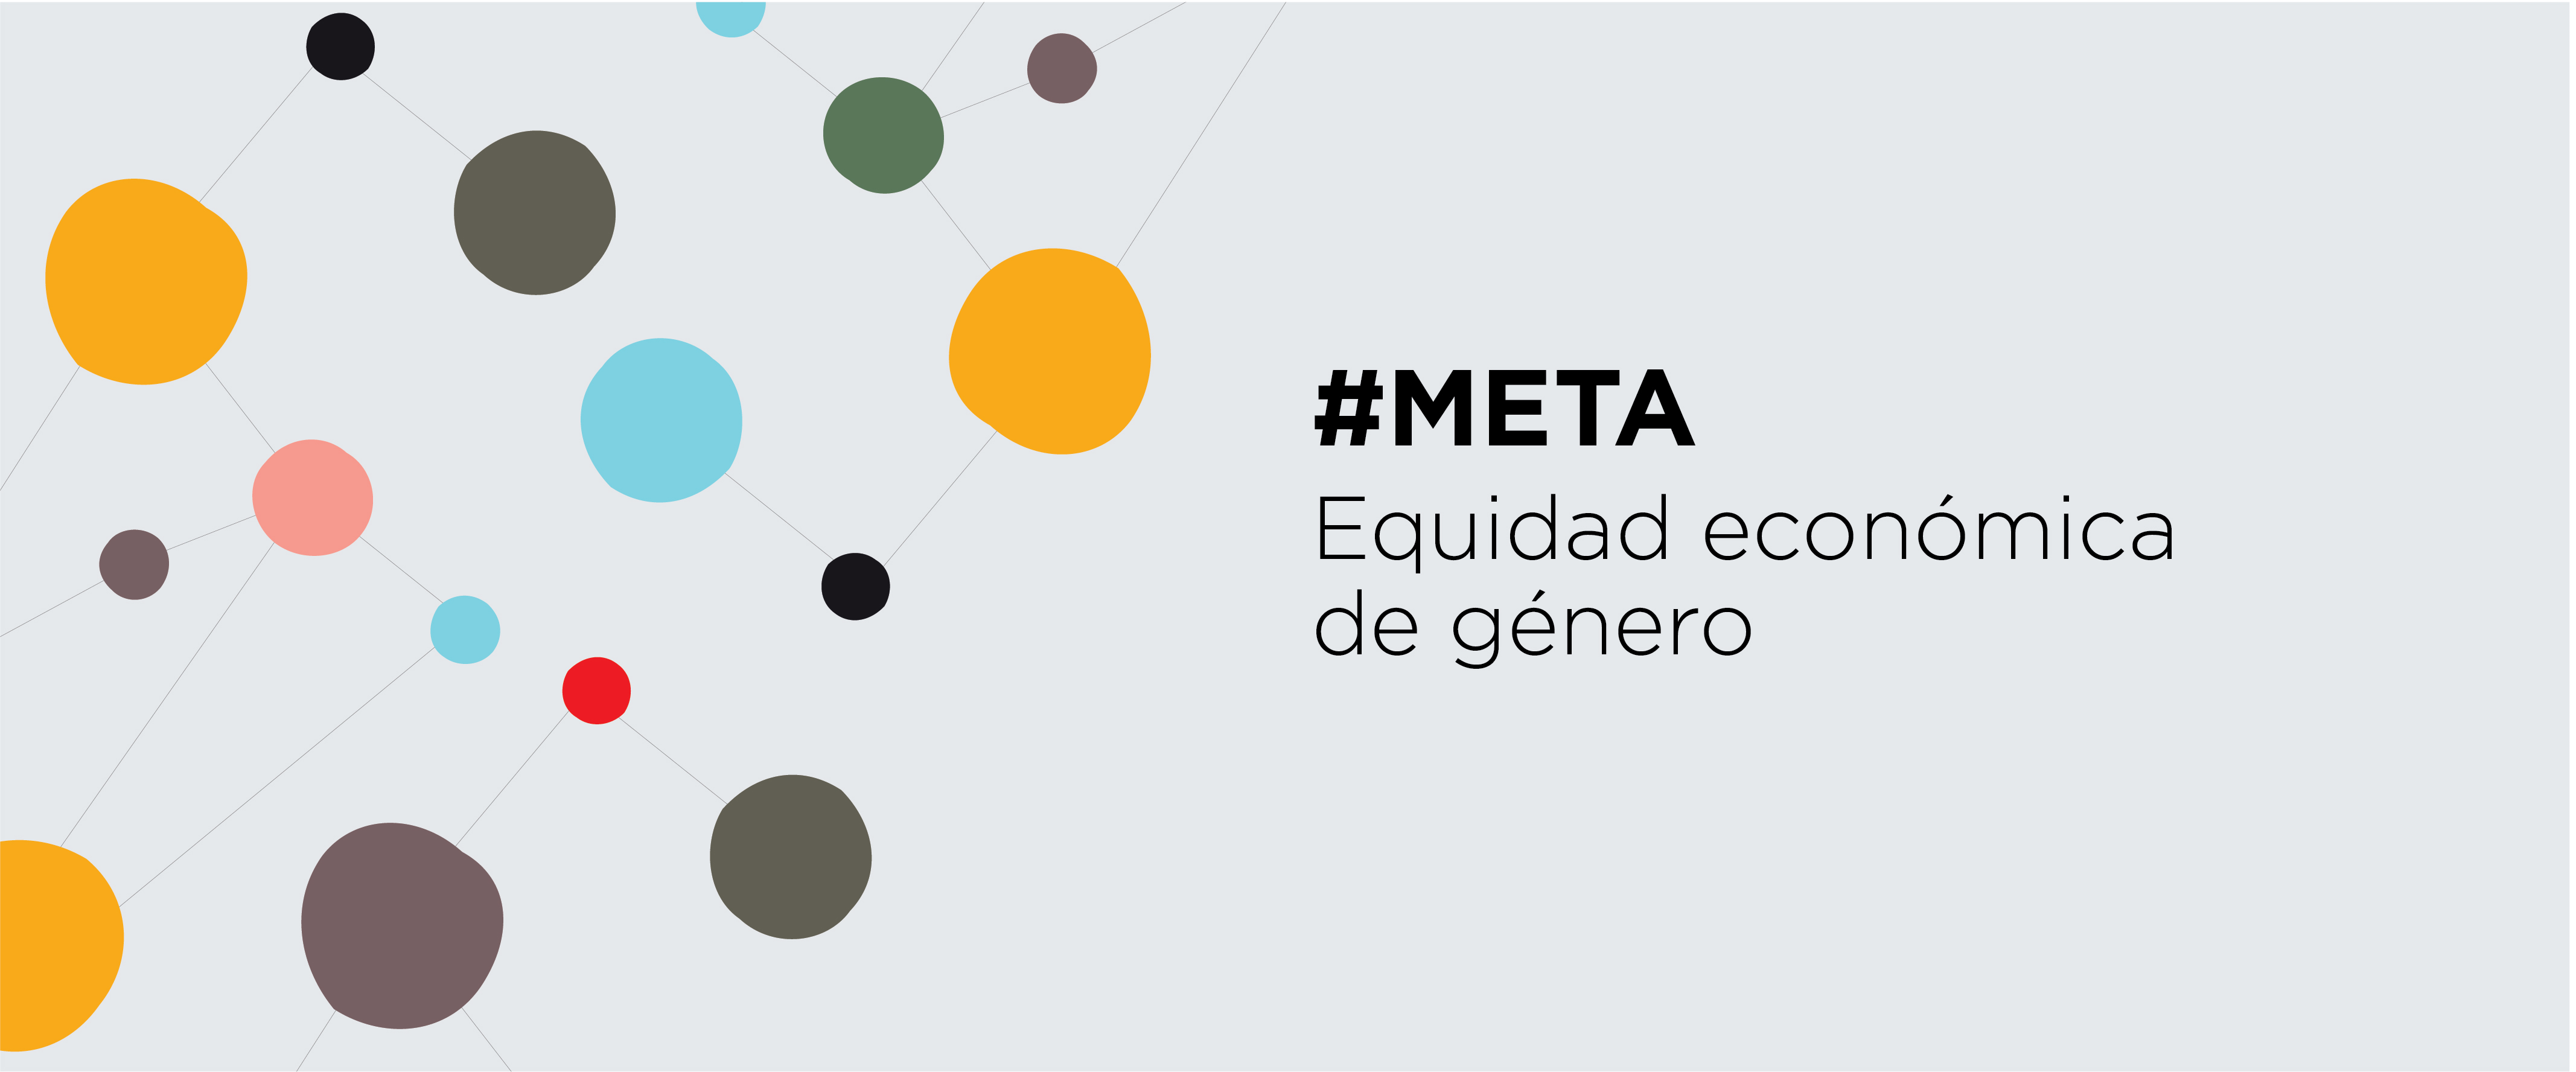 Flyer "Meta: equidad económica de género" de CIPPEC